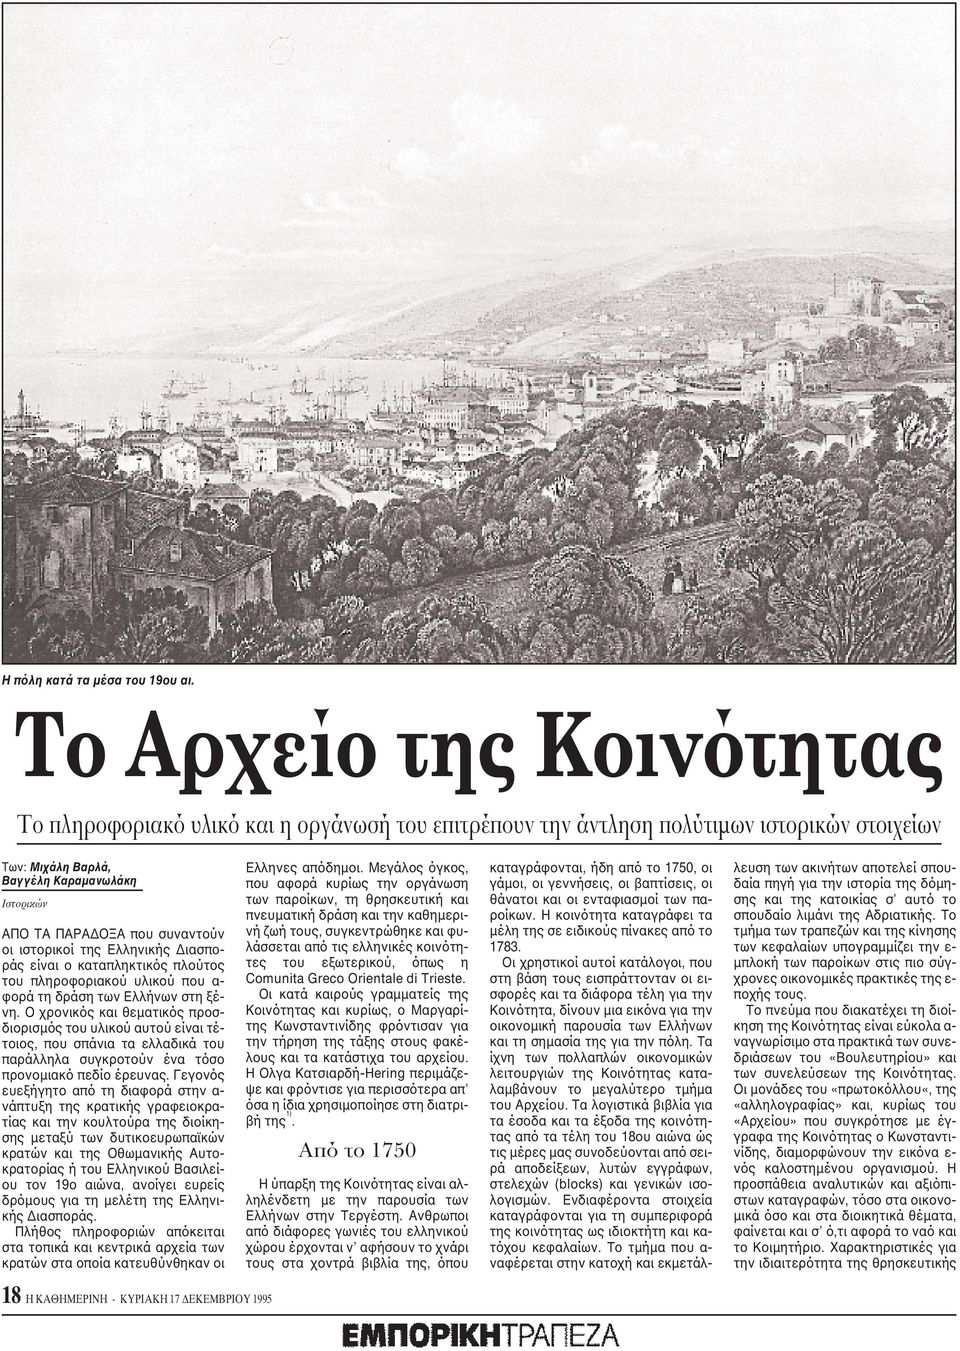 οι ιστορικοί της Eλληνικής Διασποράς είναι ο καταπληκτικός πλούτος του πληροφοριακού υλικού που α- φορά τη δράση των Eλλήνων στη ξένη.